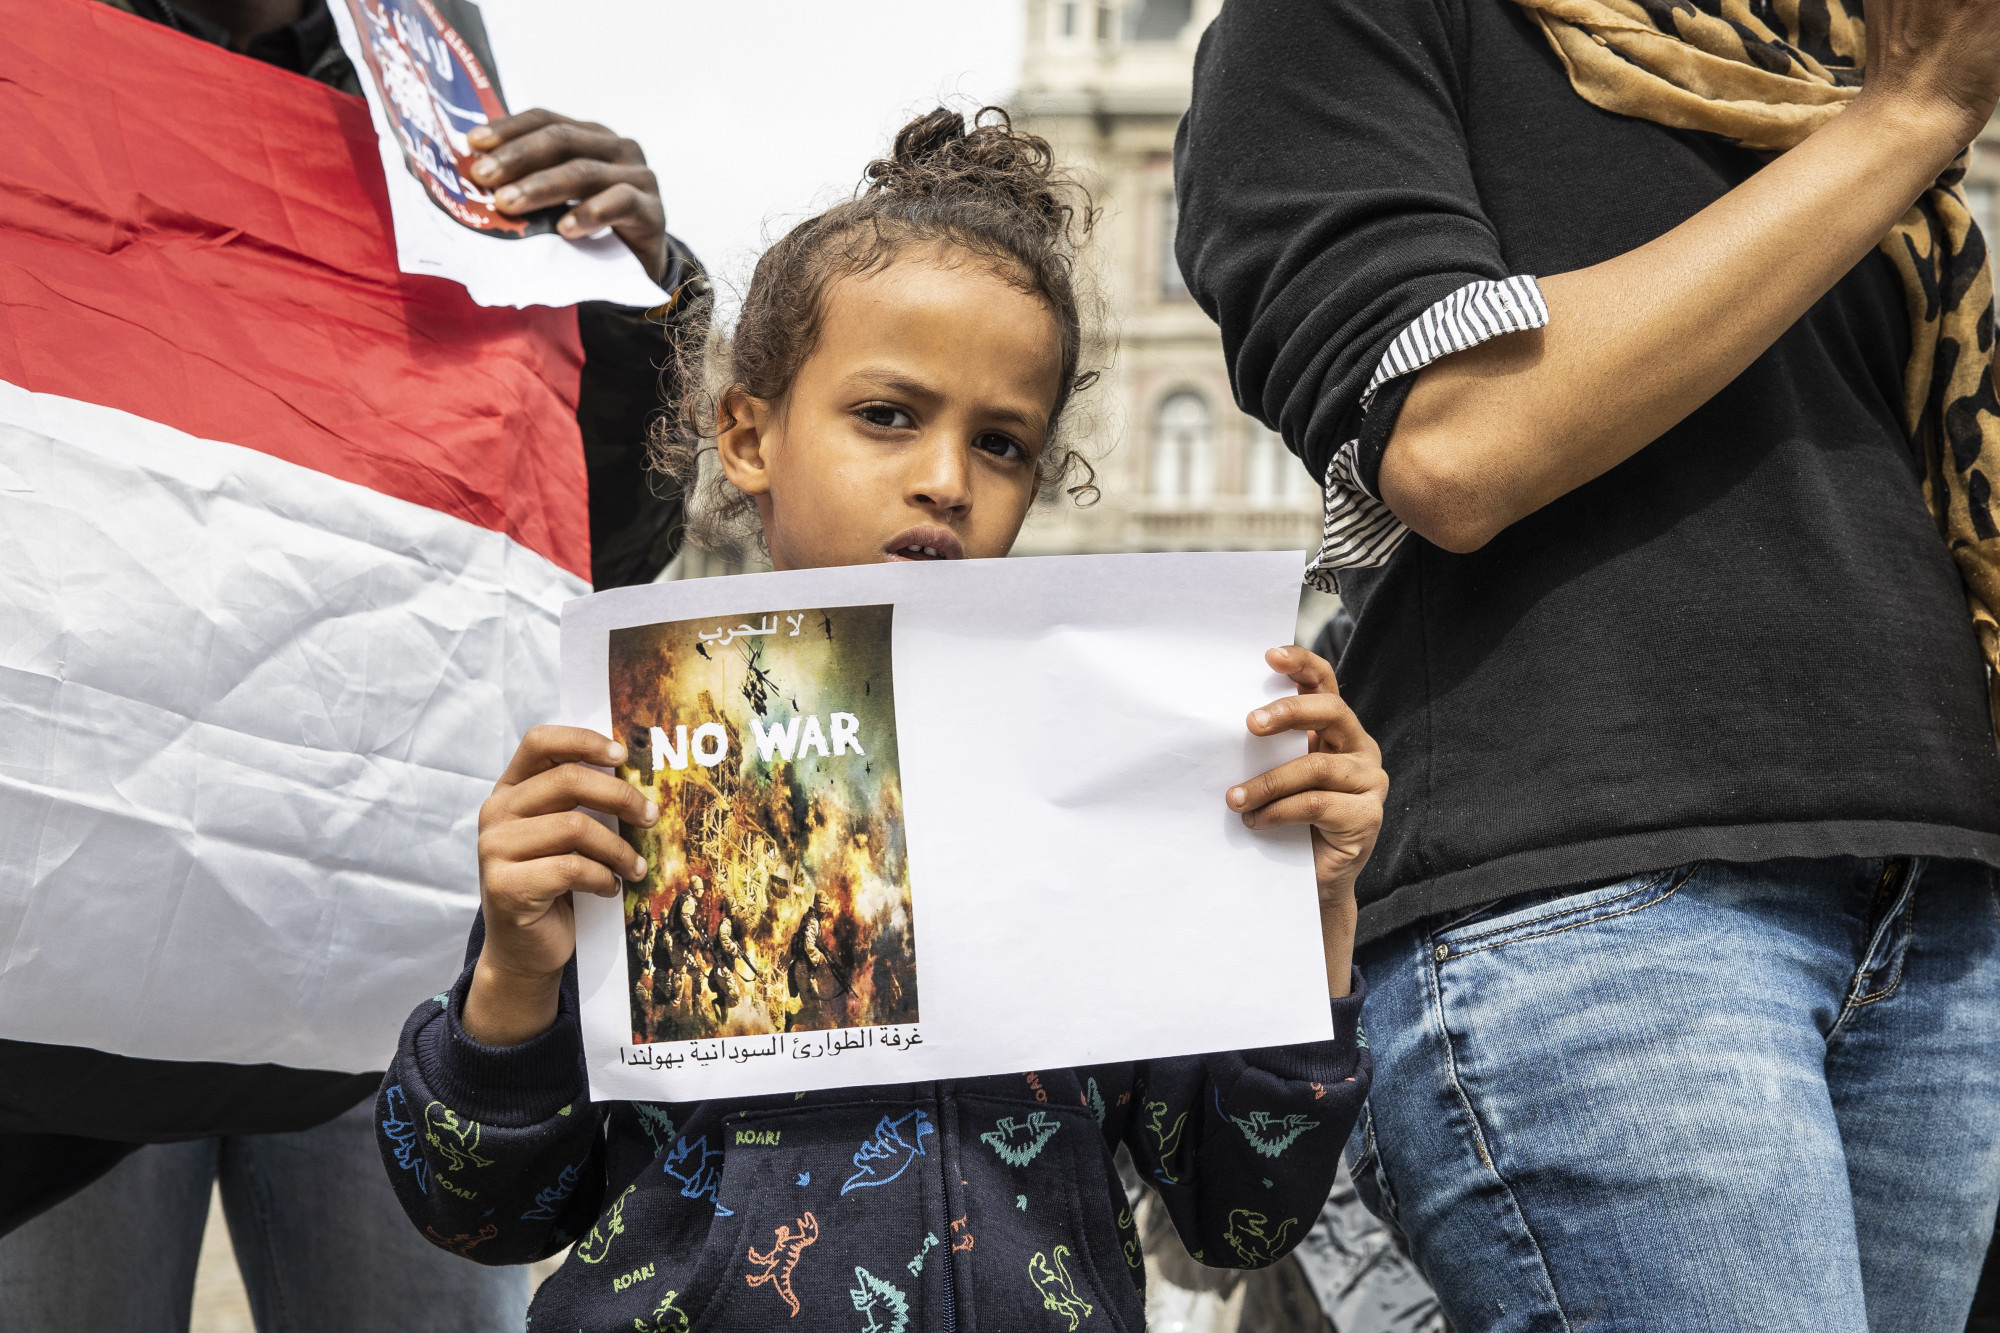 Szudáni menekültek tüntetnek a háború ellen Amszterdamban